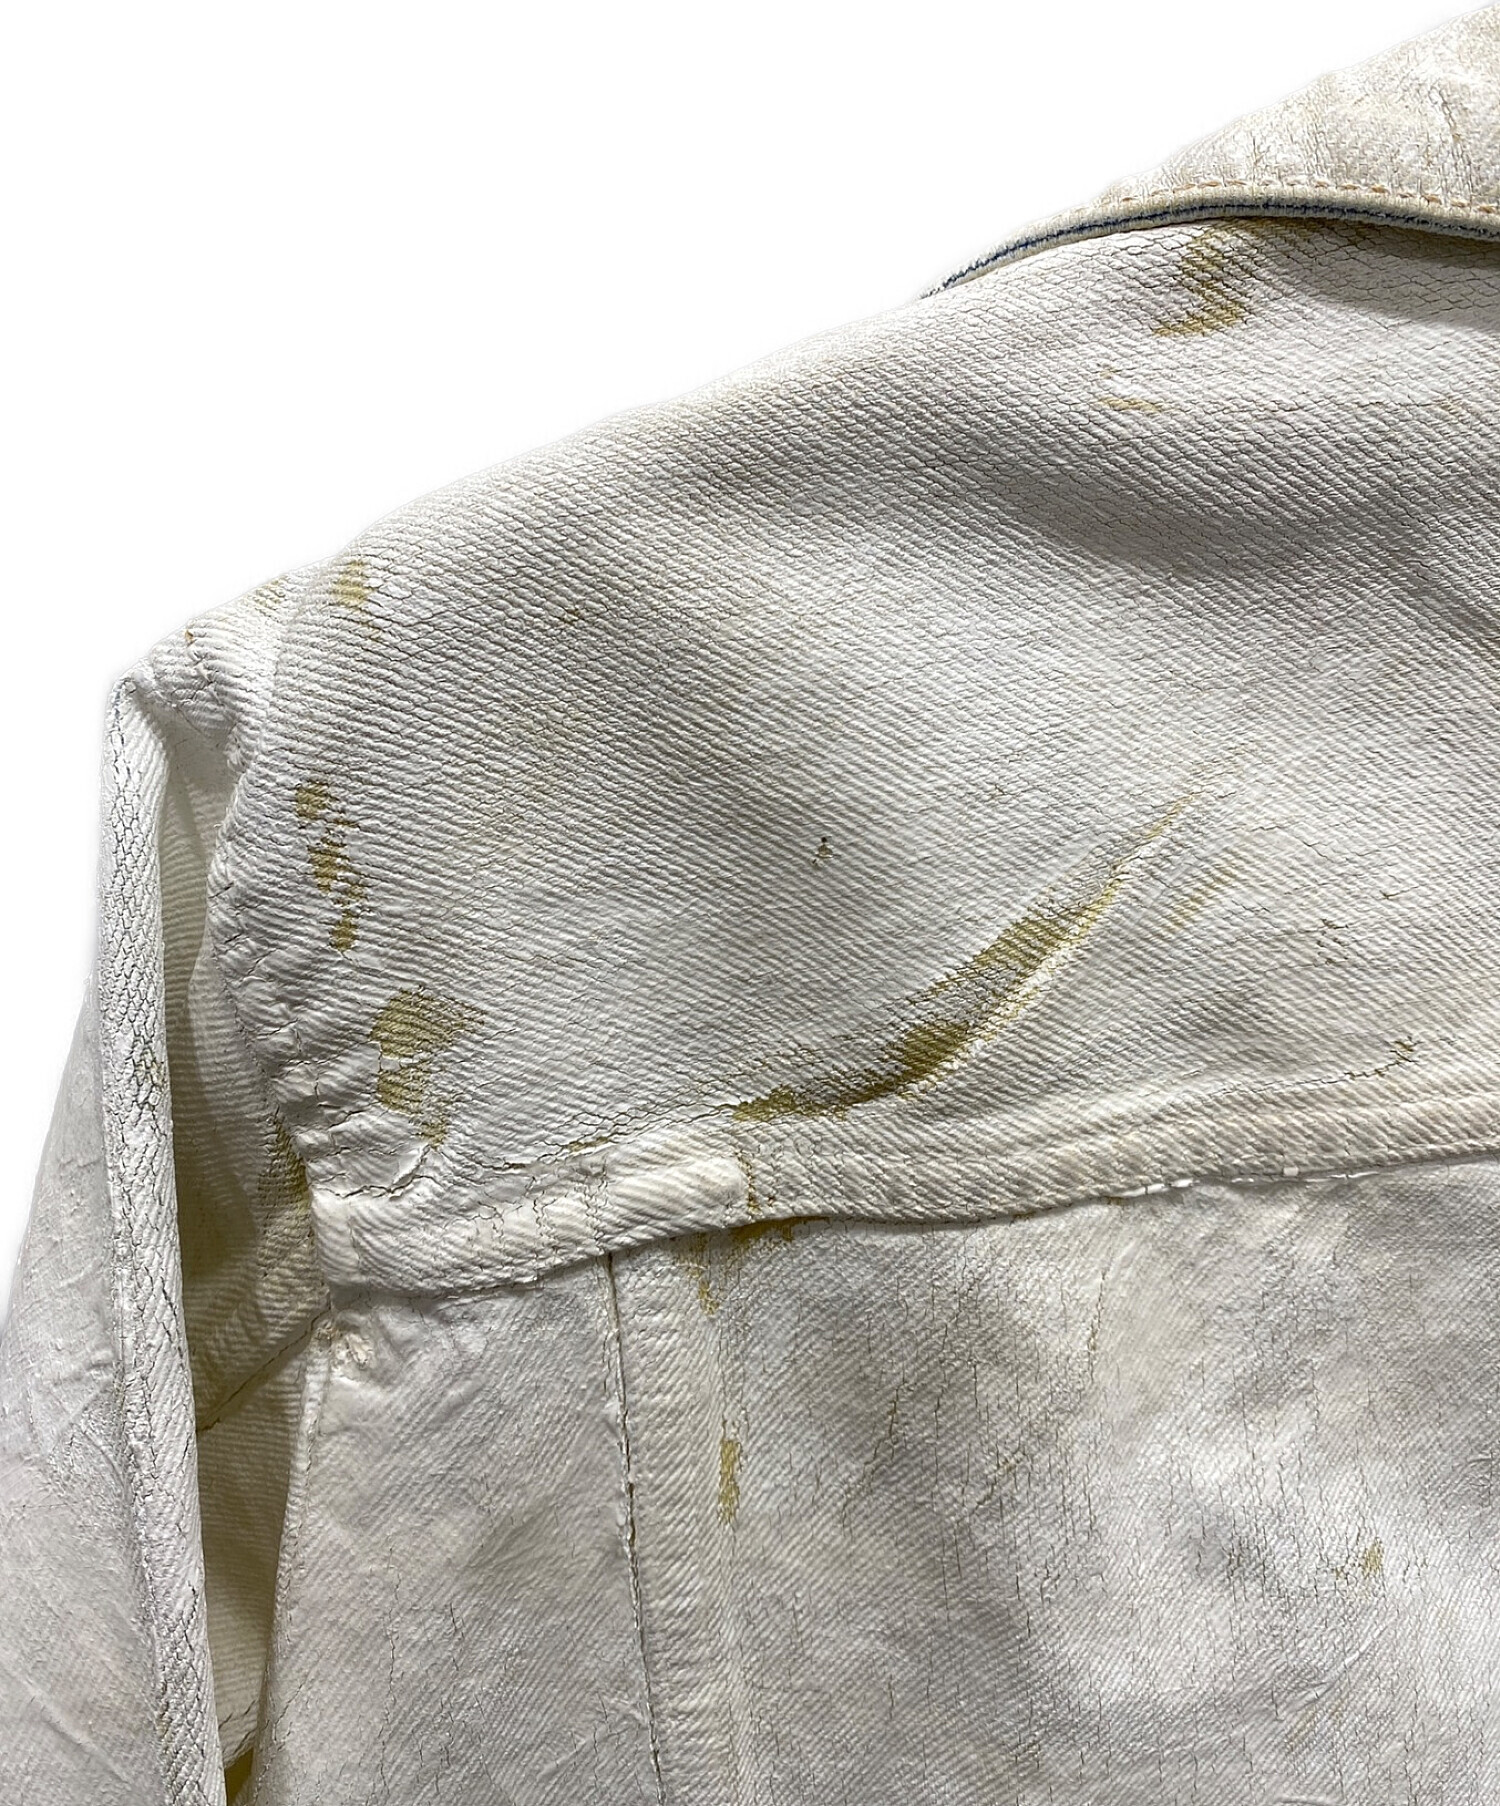 USED silver coating jacketGジャン/デニムジャケット